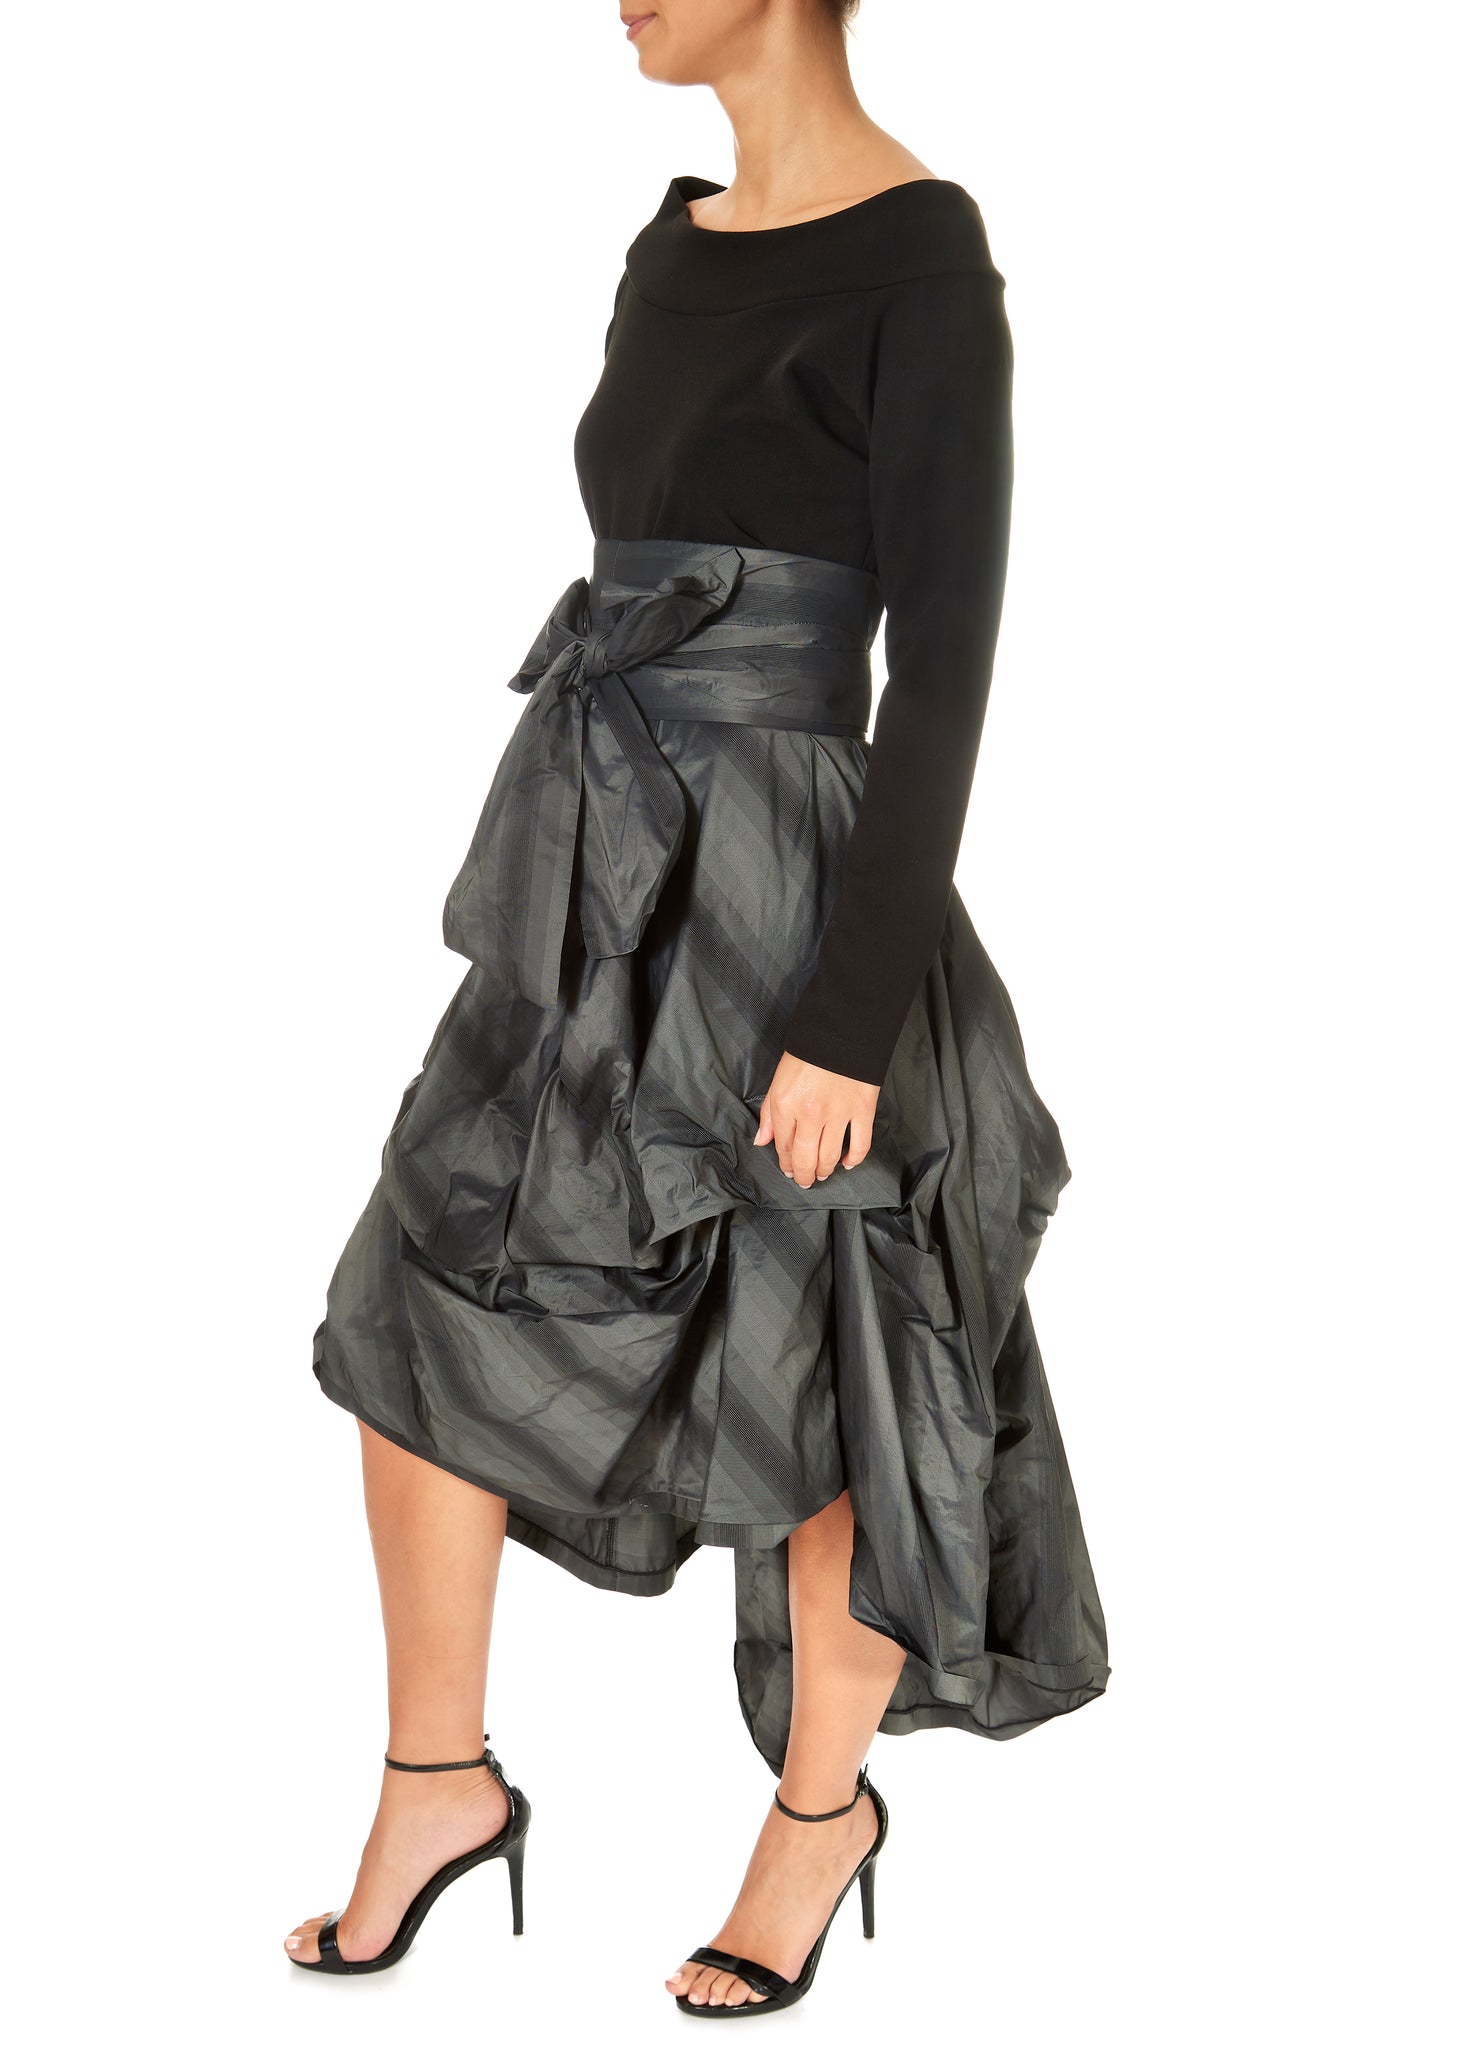 XD Xenia Design Ftic Dress In Black/Grey